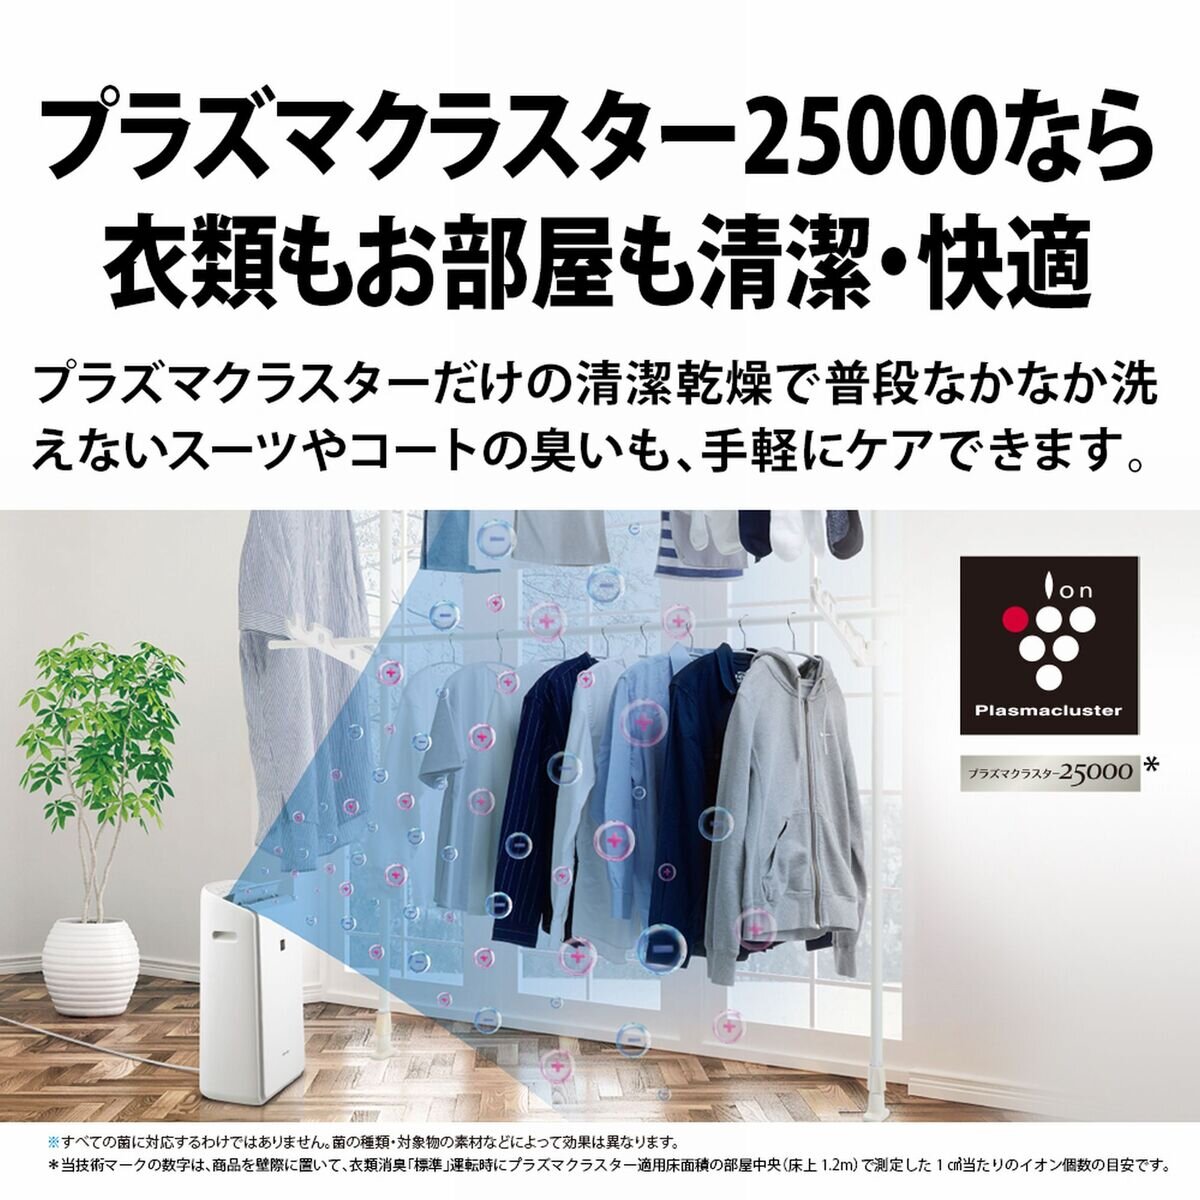 シャープ 衣類乾燥除湿機 CV-RH140-W | Costco Japan